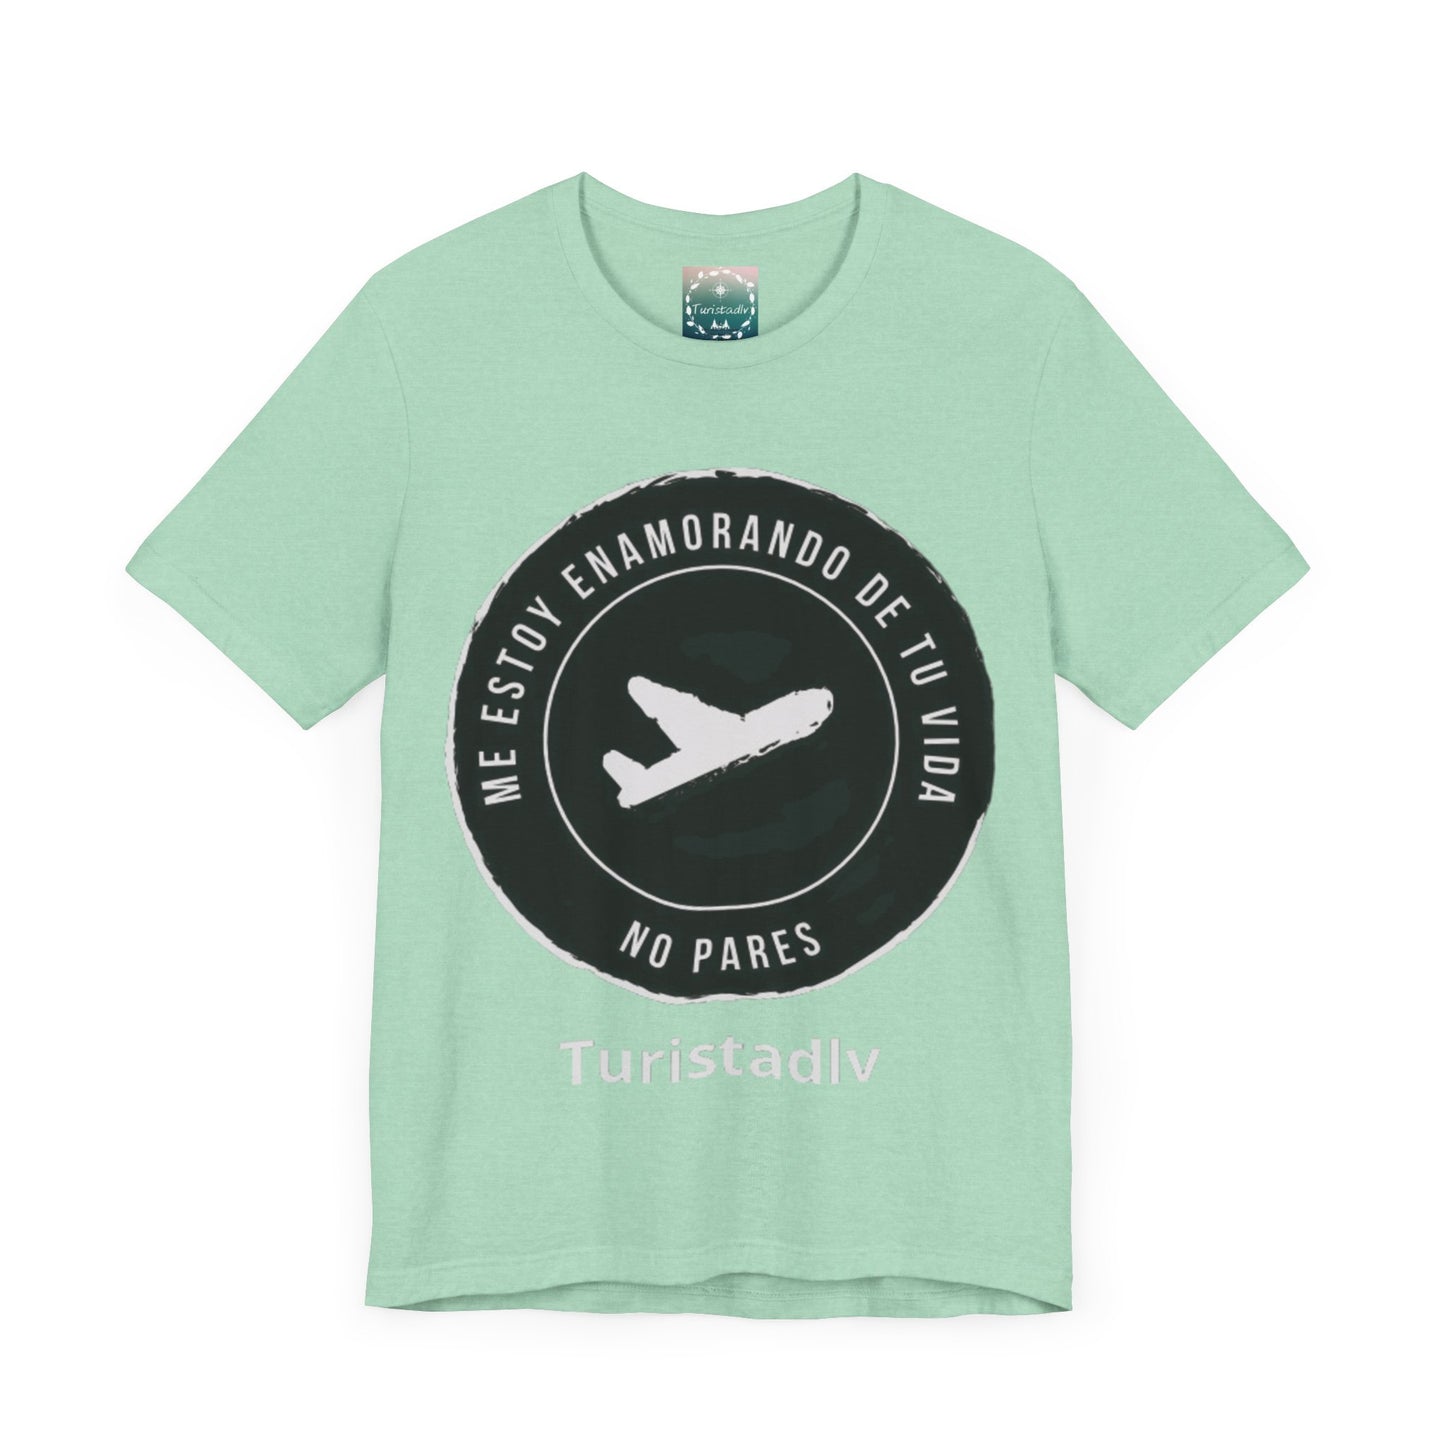 Camiseta de avión, camiseta de piloto, camisa de viajero, camiseta inspiradora, camiseta de viajero, regalo viajero, aviación, camisa viaje.